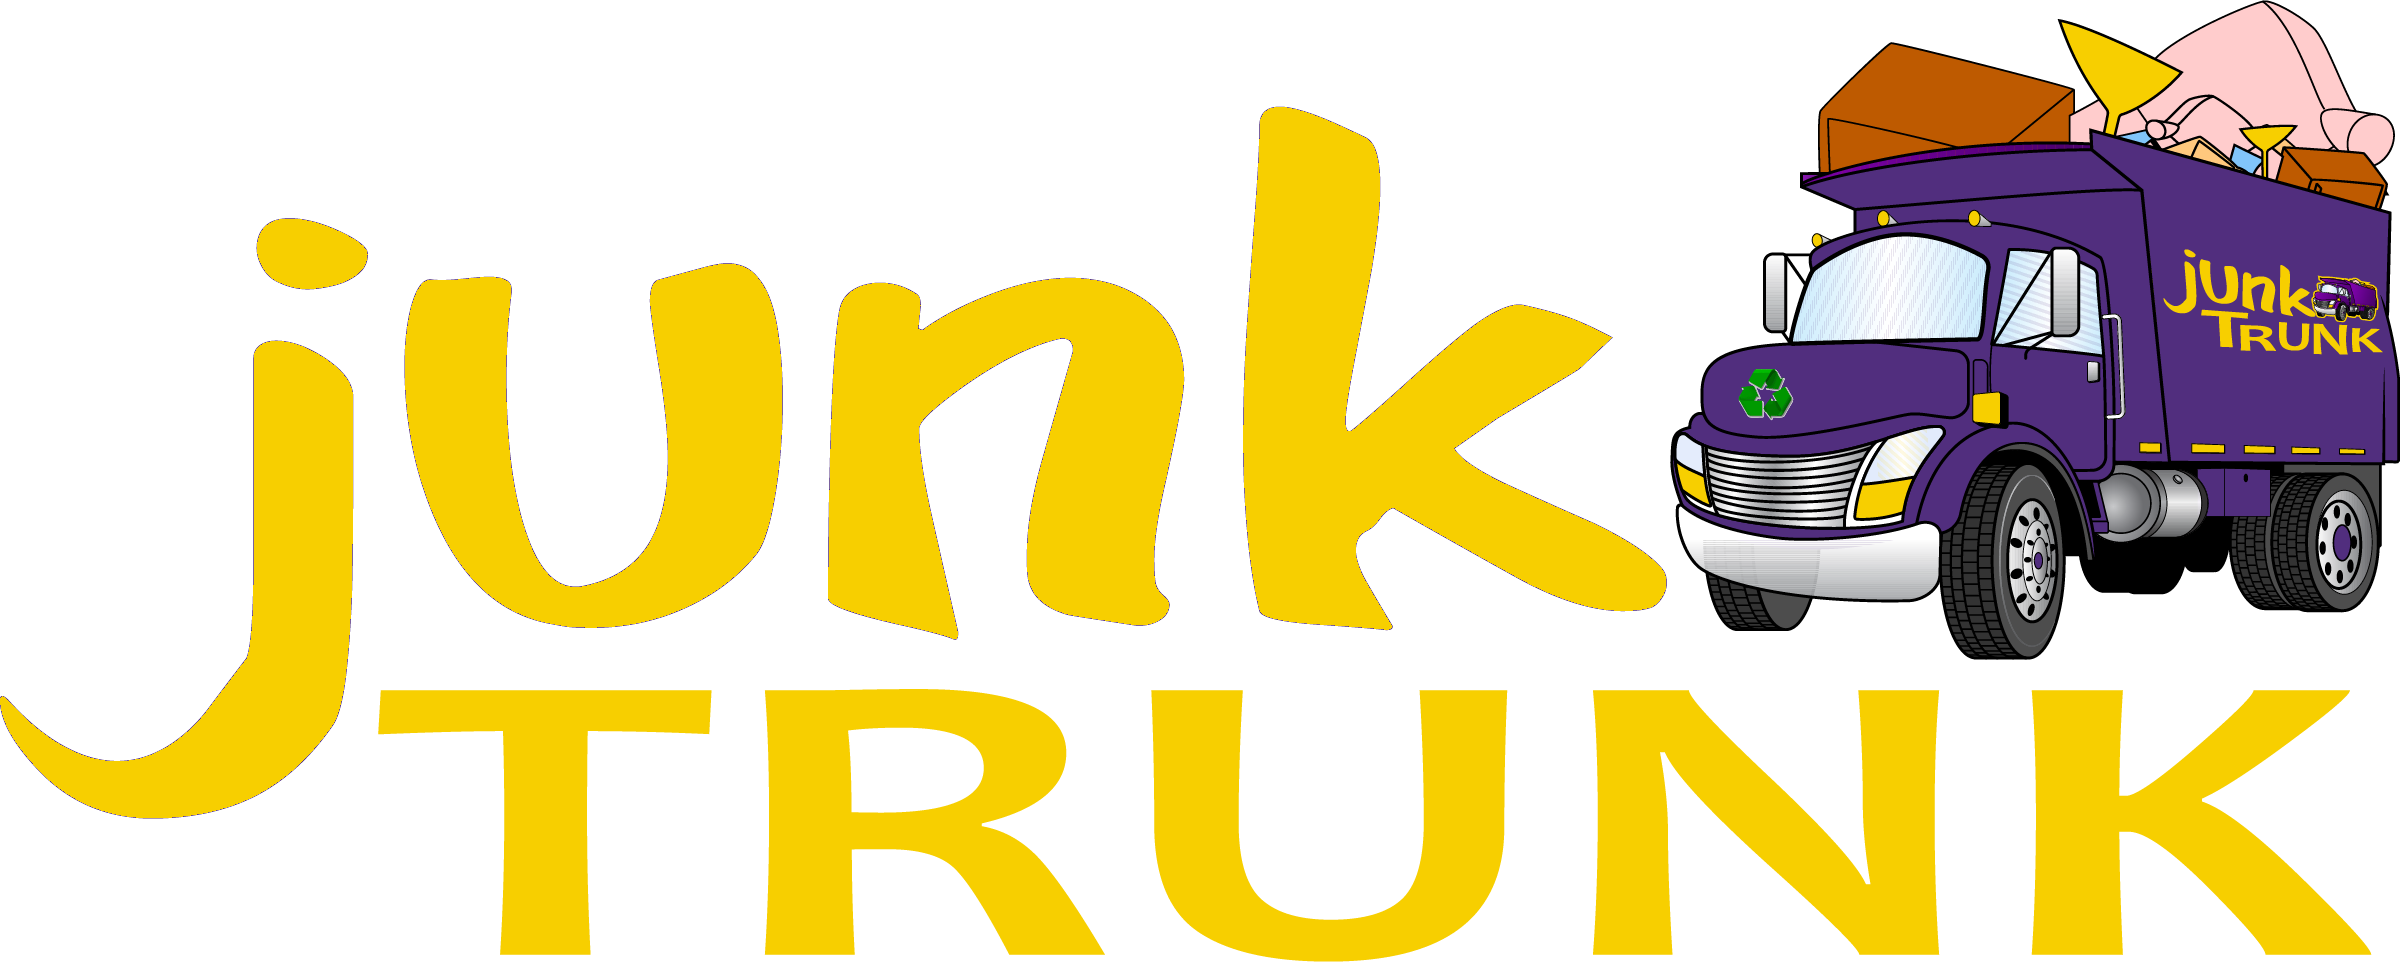 SC Junk Trunk-